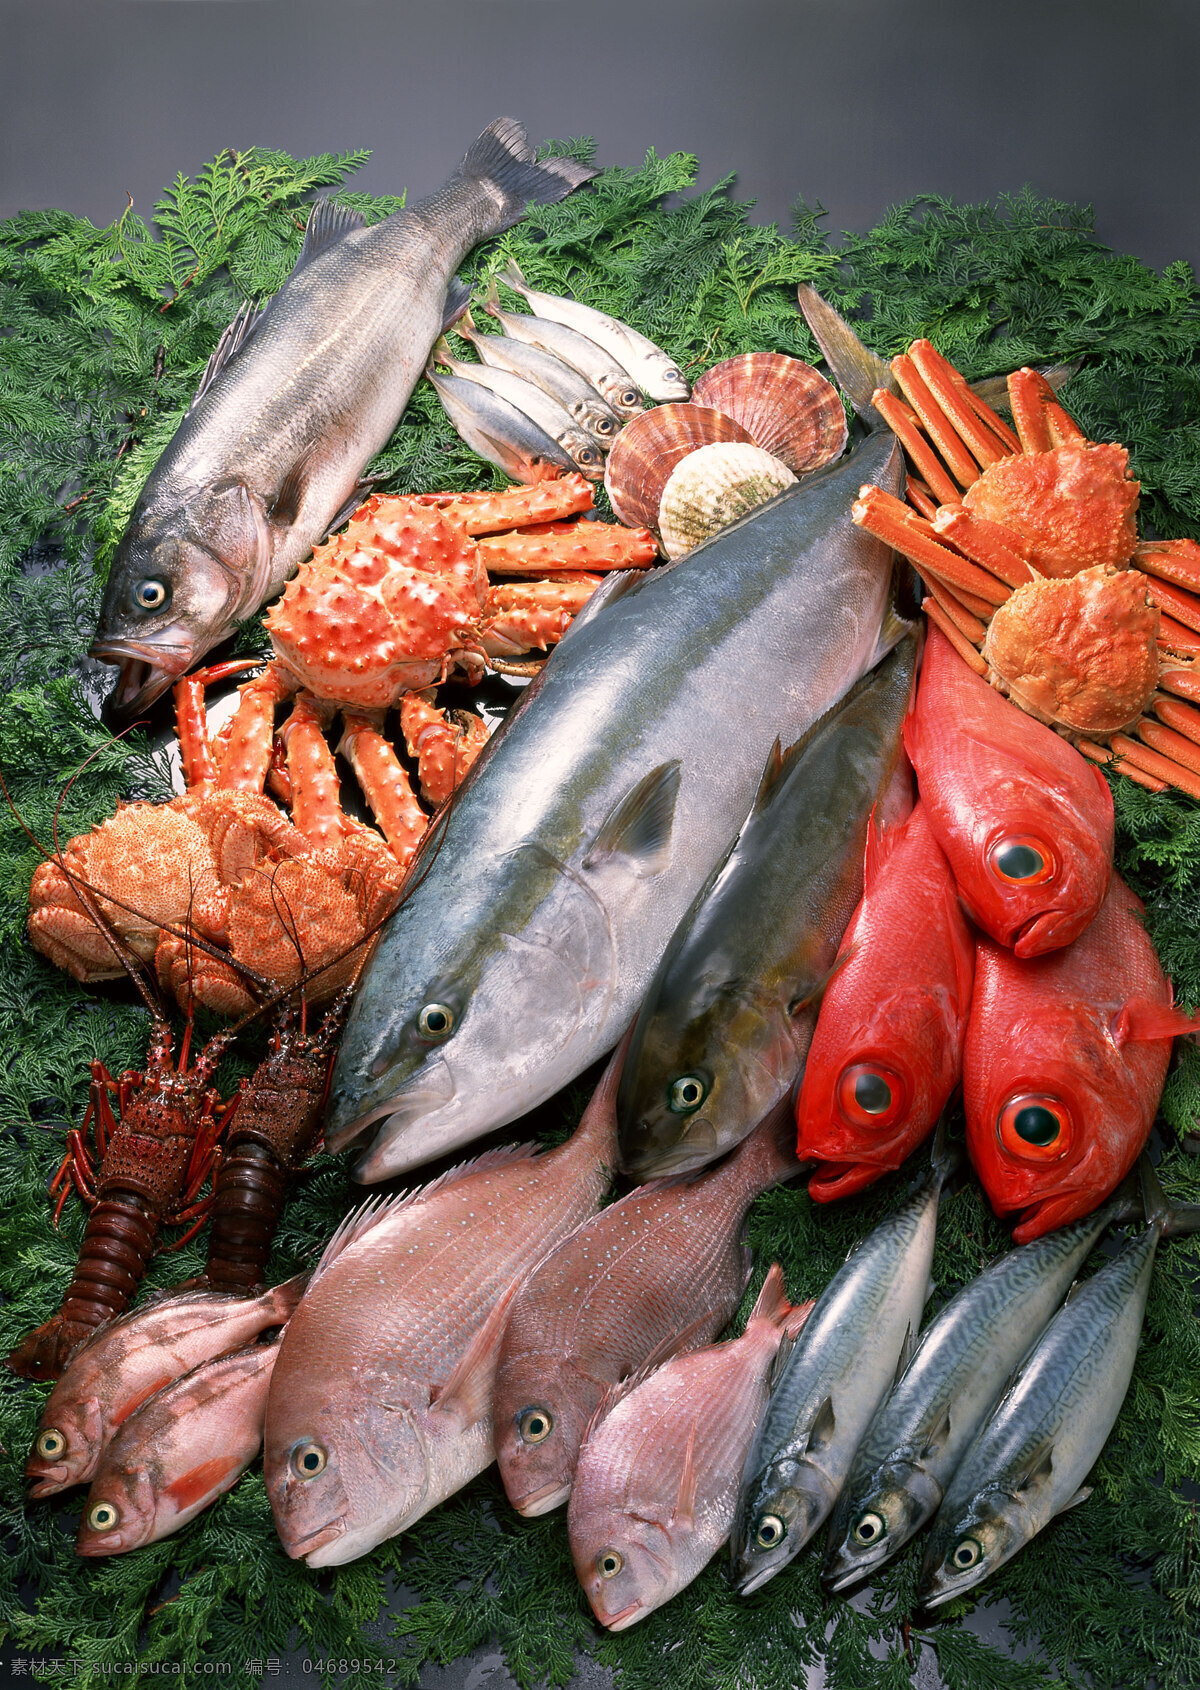 海鲜 海鱼 鱼类 海鲜食材 游水海鲜 海洋生物 新鲜海鲜 海鲜素材 海洋资源 食物原料 餐饮美食 摄影图库 摄影图片 高清图片 印刷图片